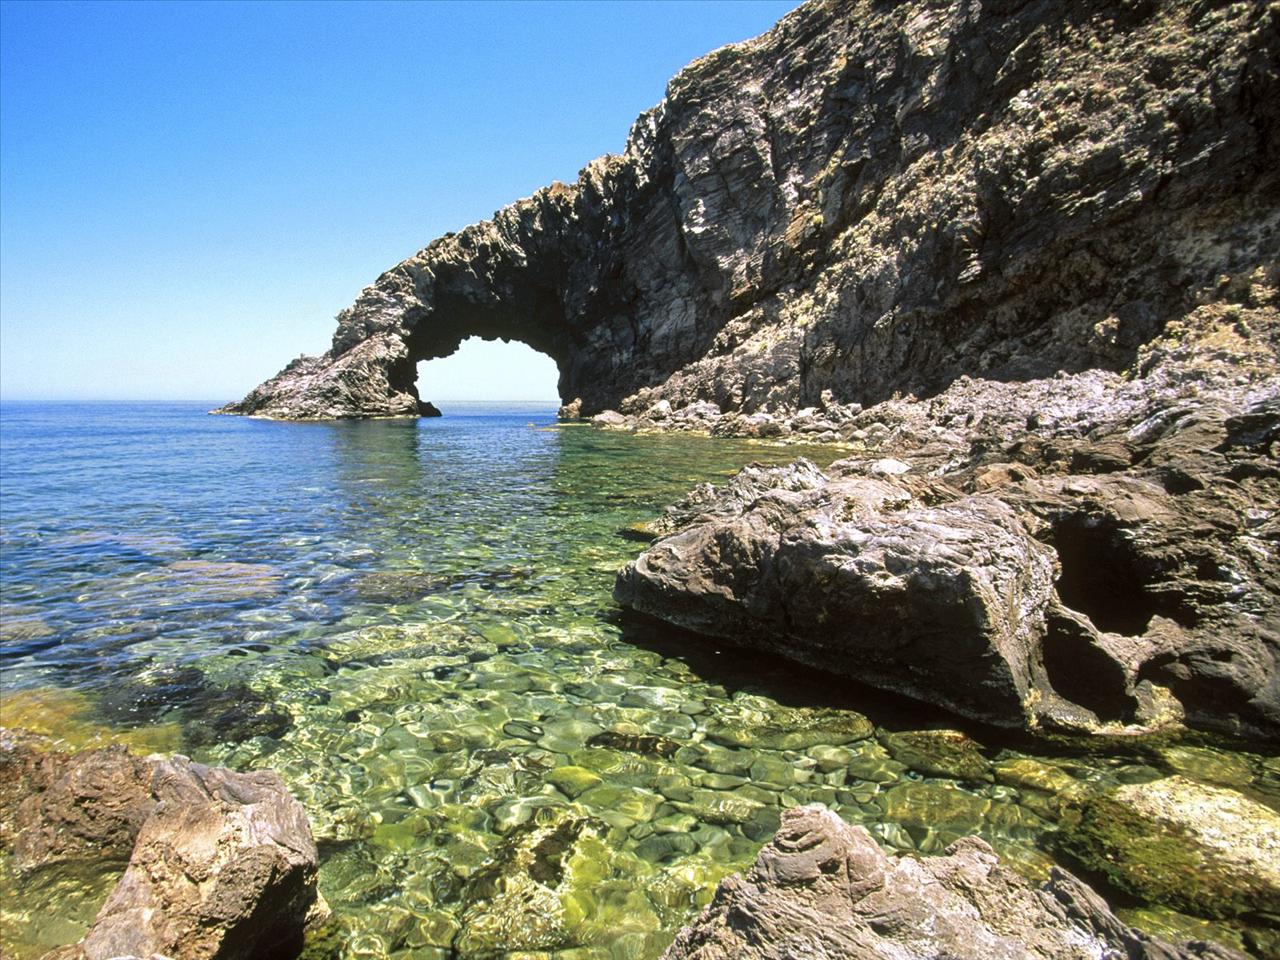 podróże - Arco delElefante na wyspie Pantelleria w pobliżu Sycylii.jpg